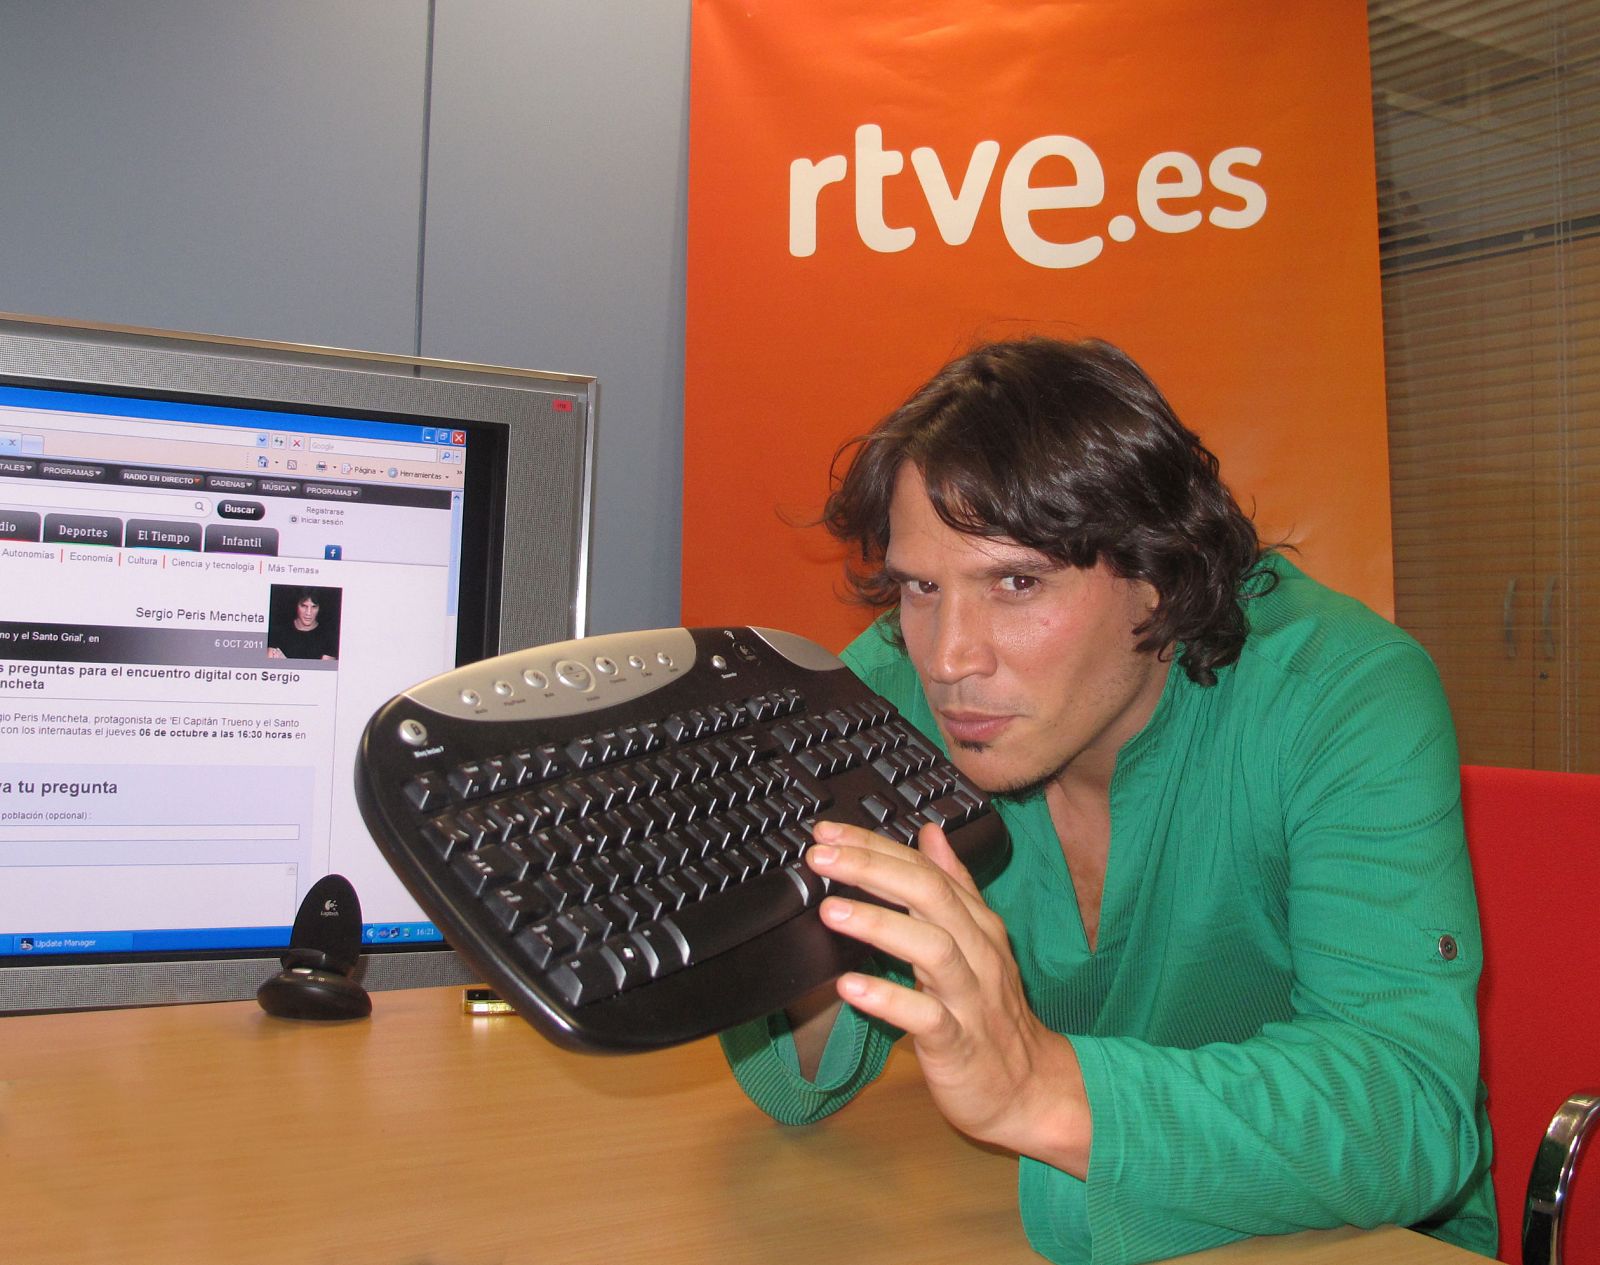 Sergio Peris-Mencheta ha estado en un encuentro digital en RTVE.es